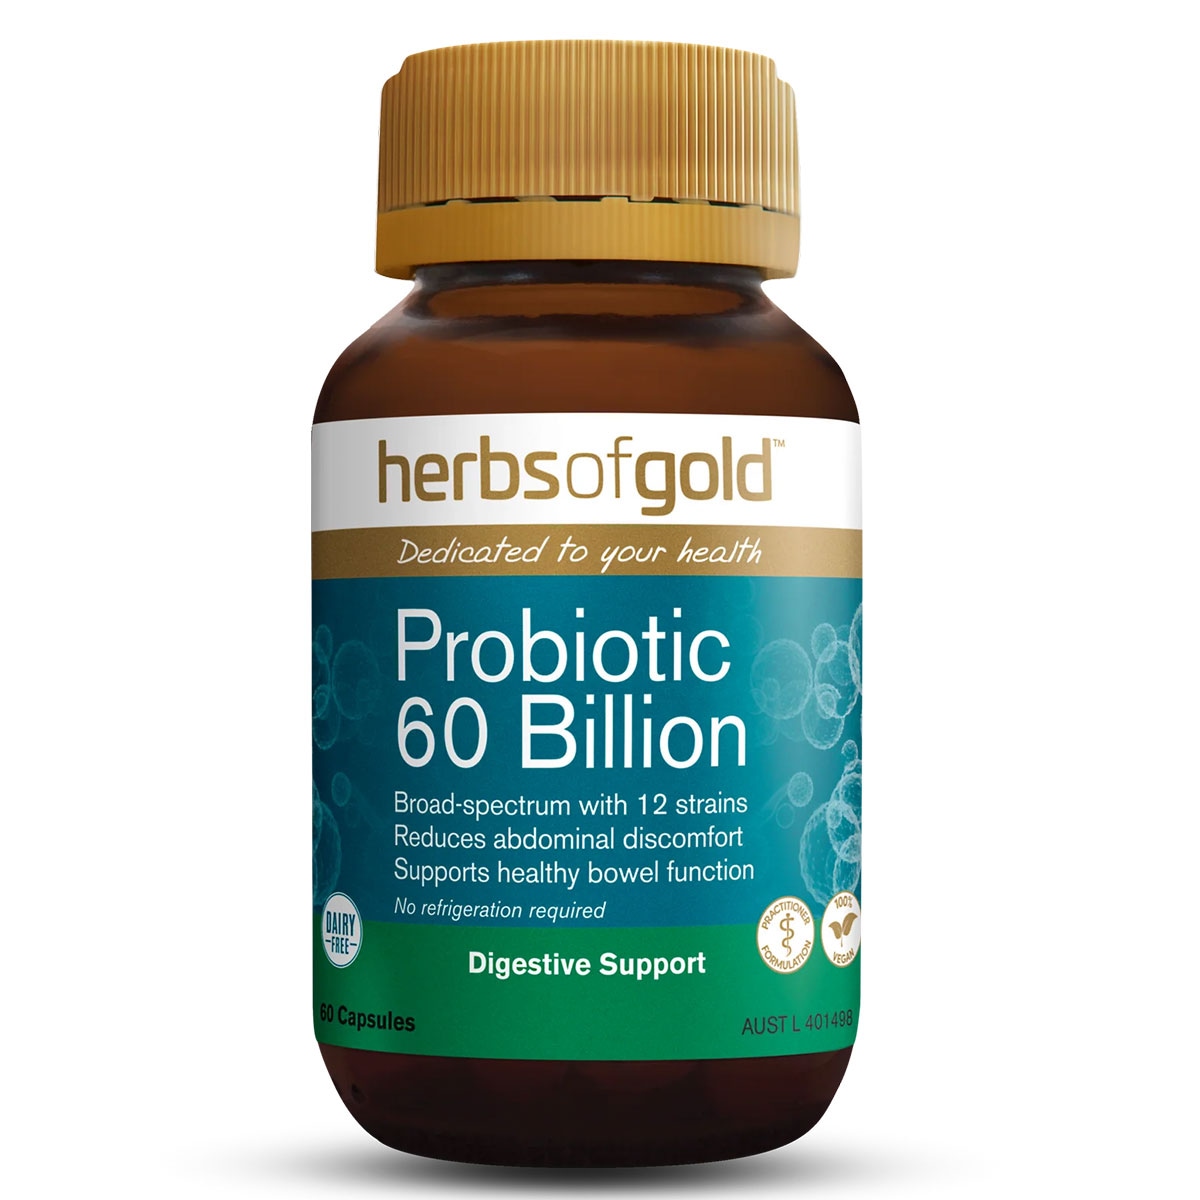 Herbs of Gold Probiotic 60 Billion Capsules Australia